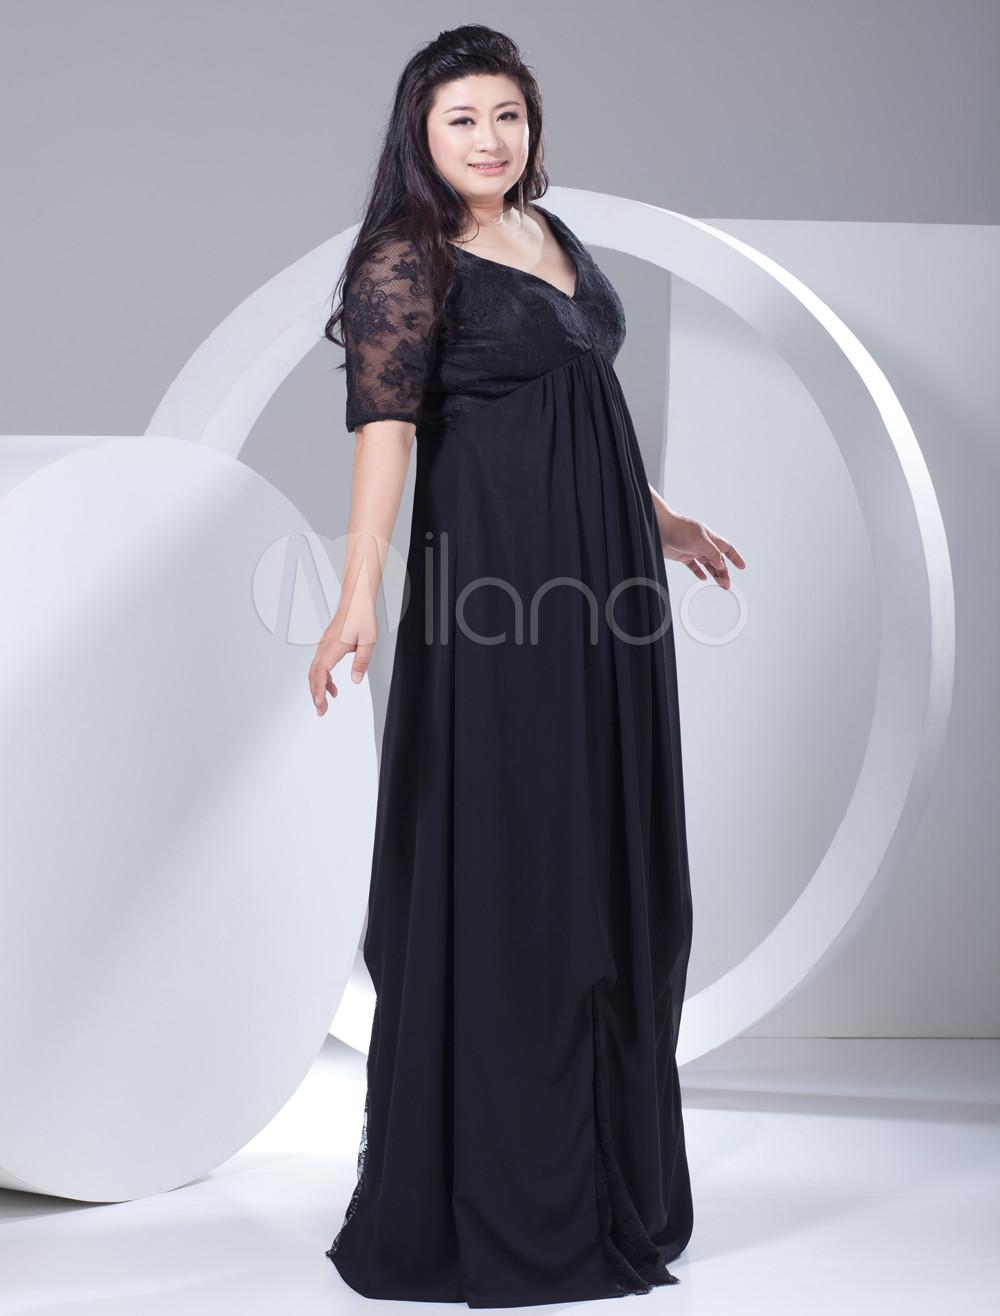 Foto 2013 Estilo elegante gasa negra del cordón media manga más vestido de noche de tamaño foto 593469